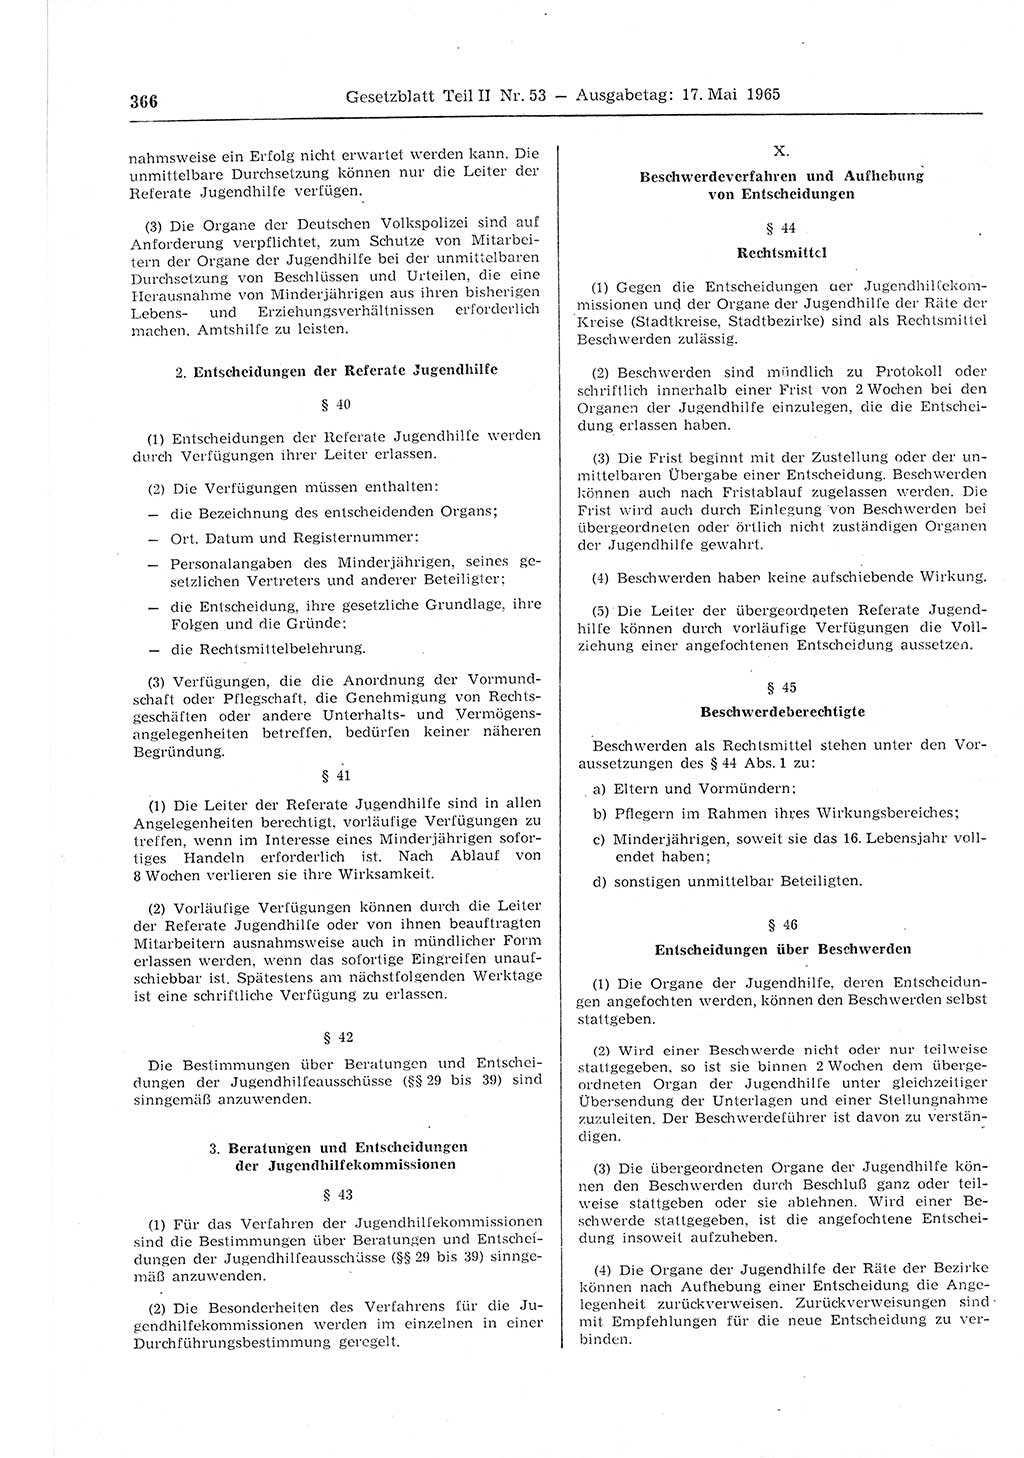 Gesetzblatt (GBl.) der Deutschen Demokratischen Republik (DDR) Teil ⅠⅠ 1965, Seite 366 (GBl. DDR ⅠⅠ 1965, S. 366)